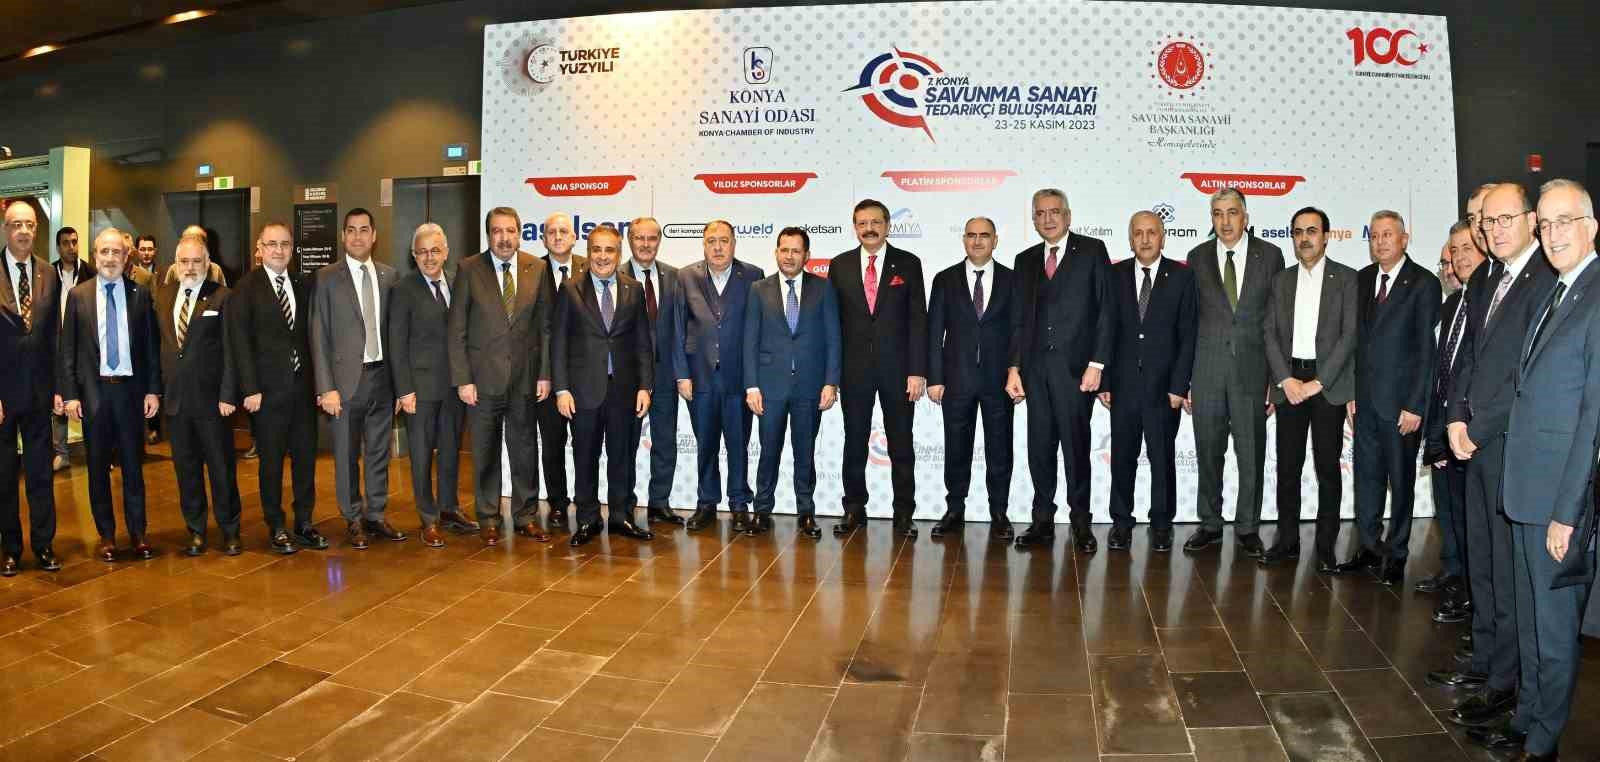 TOBB Başkanı Hisarcıklıoğlu: "KSO Türkiye’ye rol model olacak işler yapıyor"